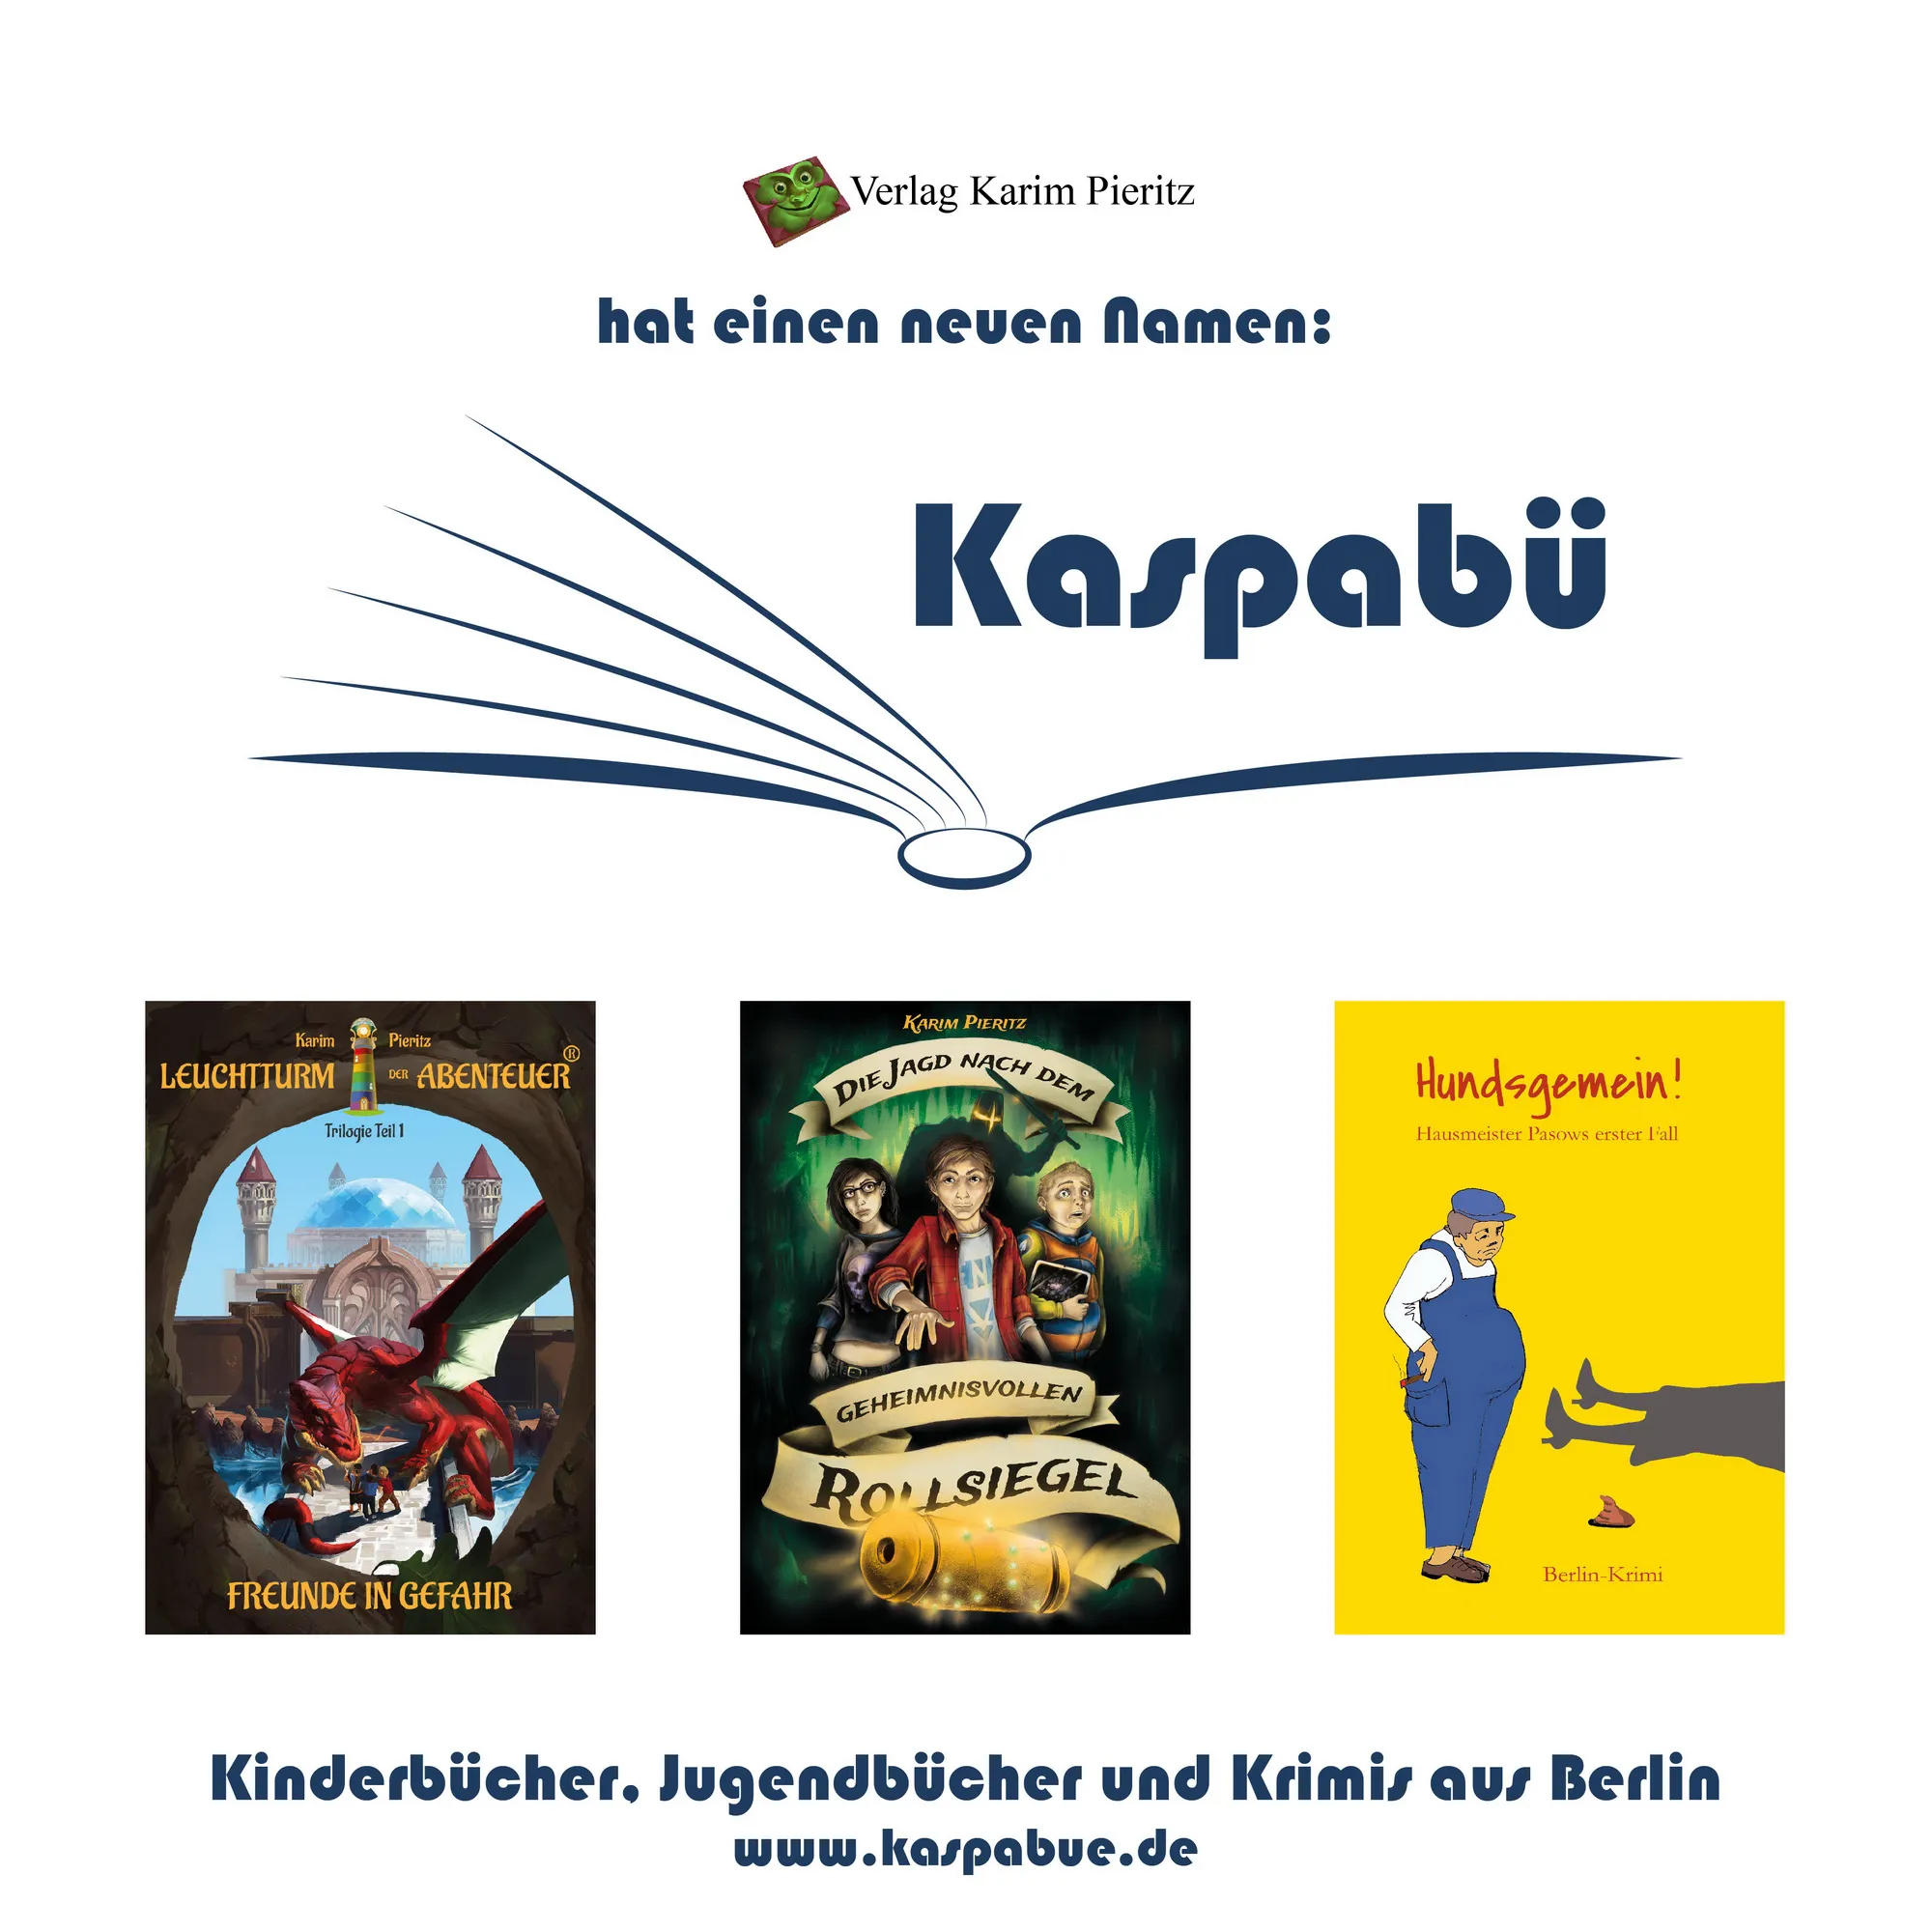 Neuer Verlagsname für Kinder- und Jugendbuchverlag